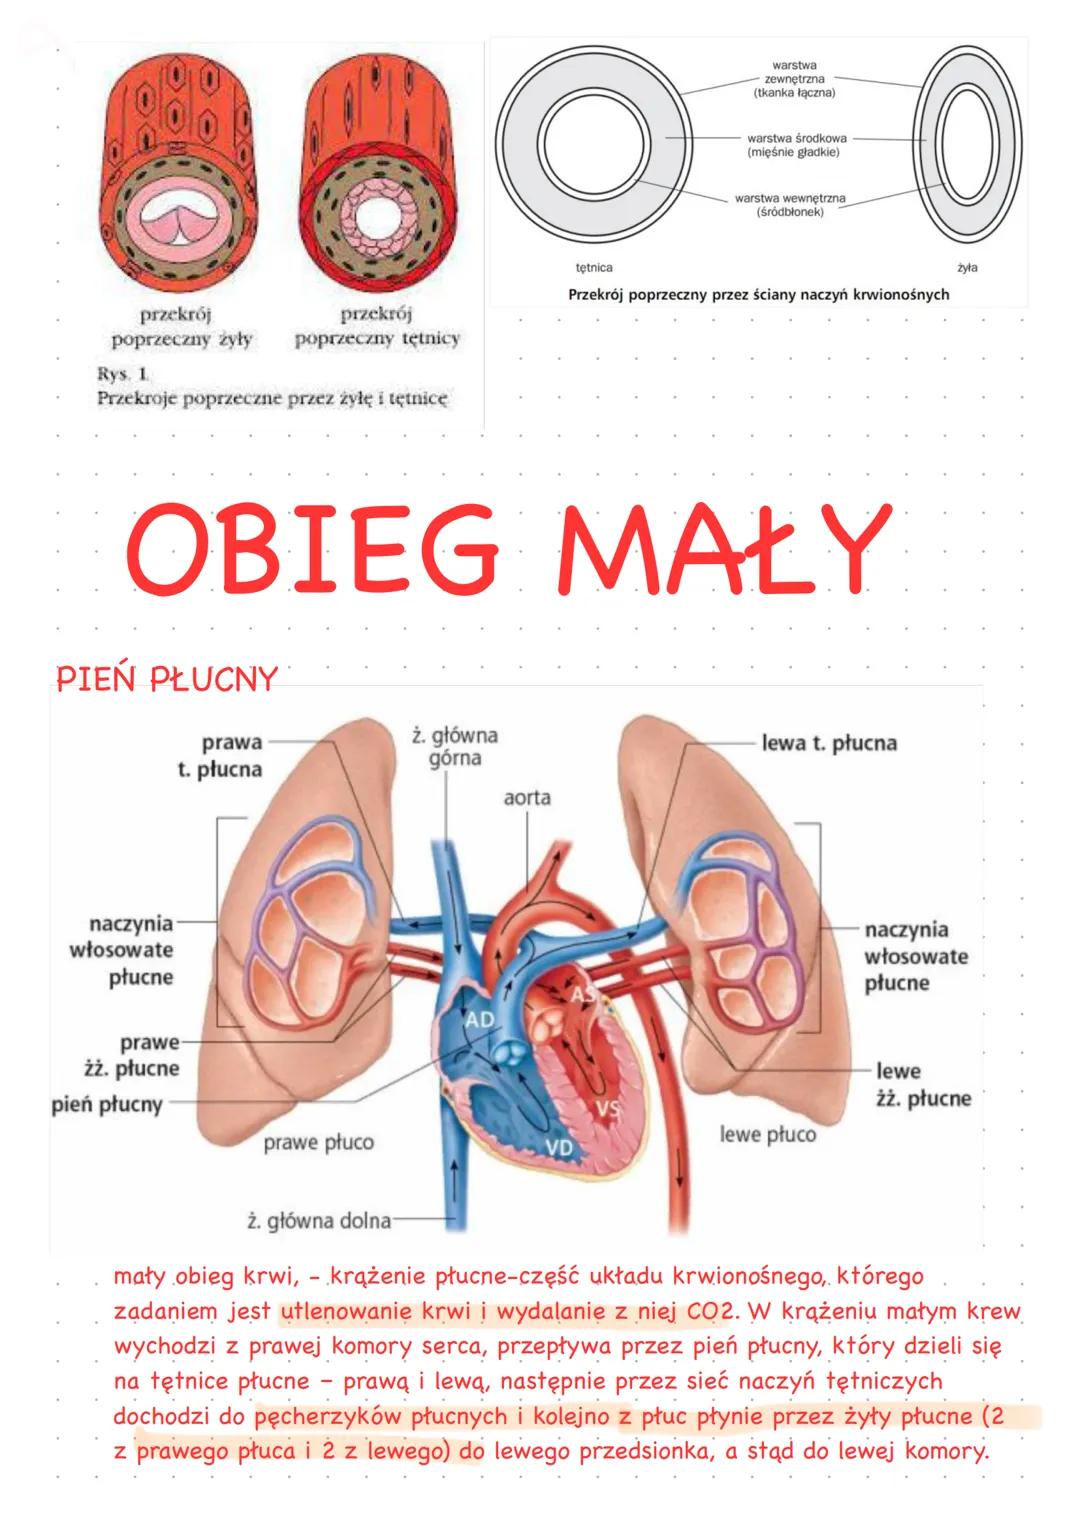 Funkcje układu krwionośnego
-Utrzymanie homeostazy organizmu
-transport gazów oddechowych do płuc i z płuc
-udział w mechanizmach odporności